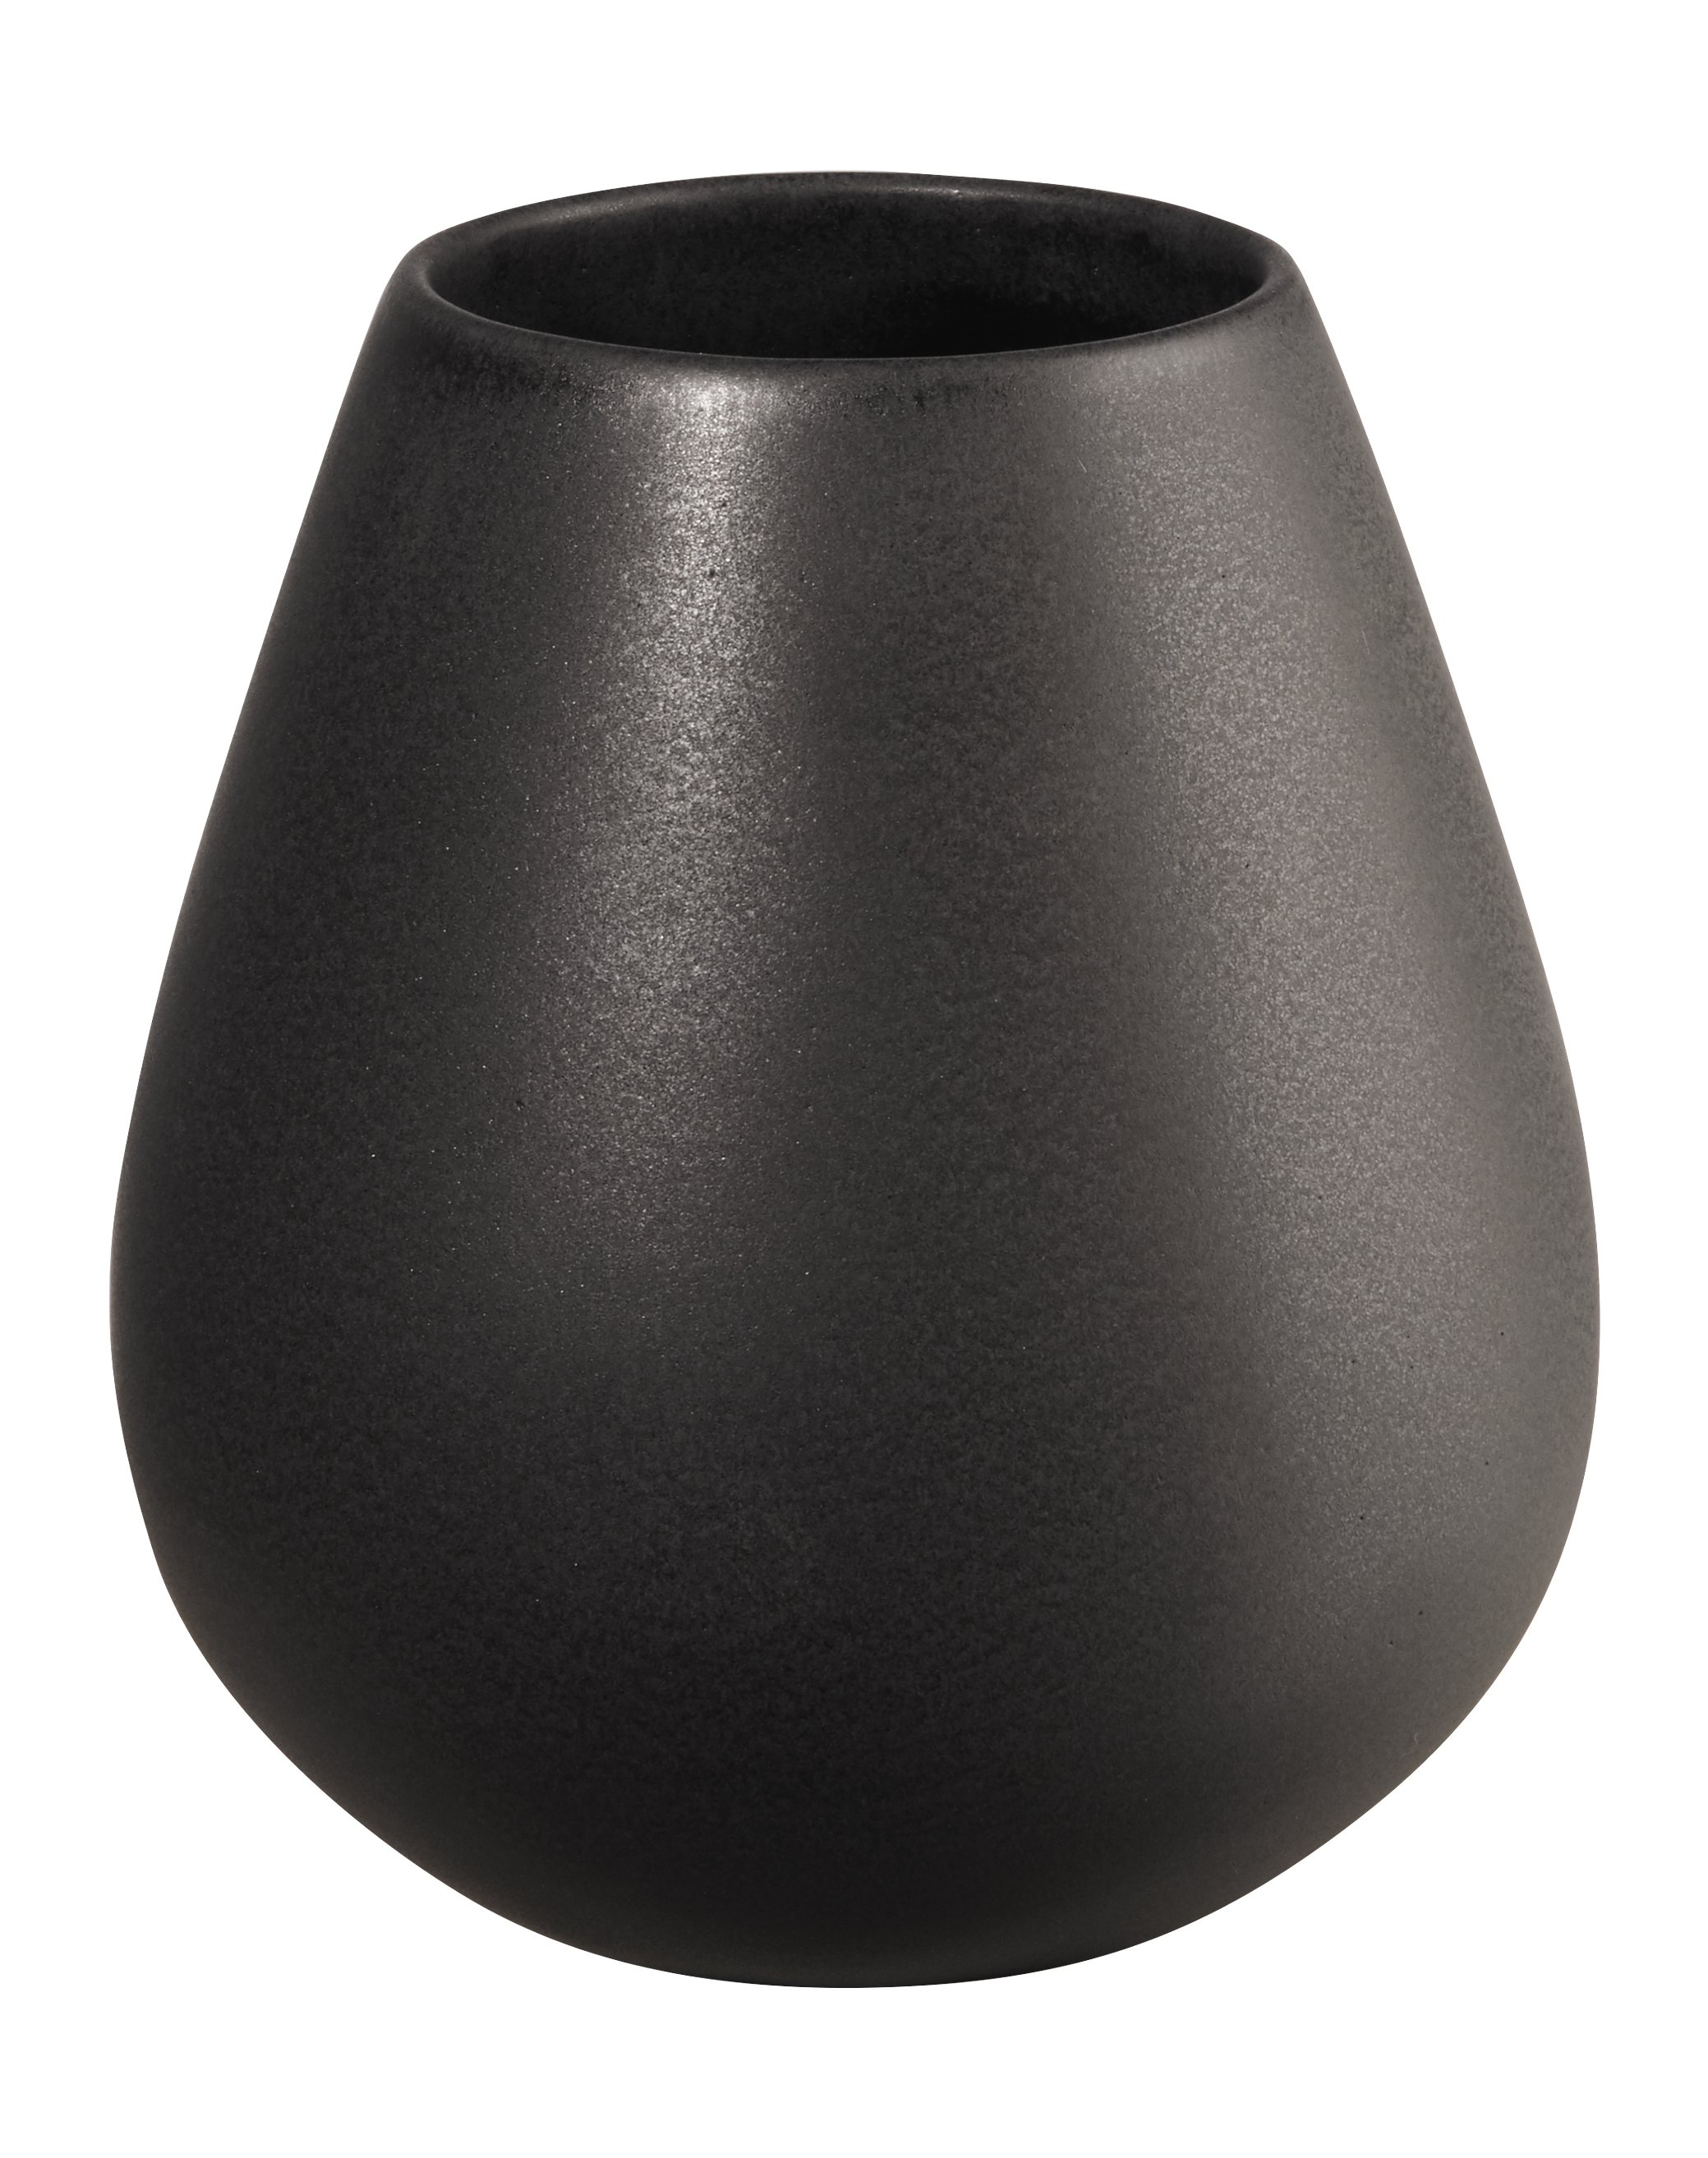 EASE, Vase, black iron D. 9cm, H. 18cm